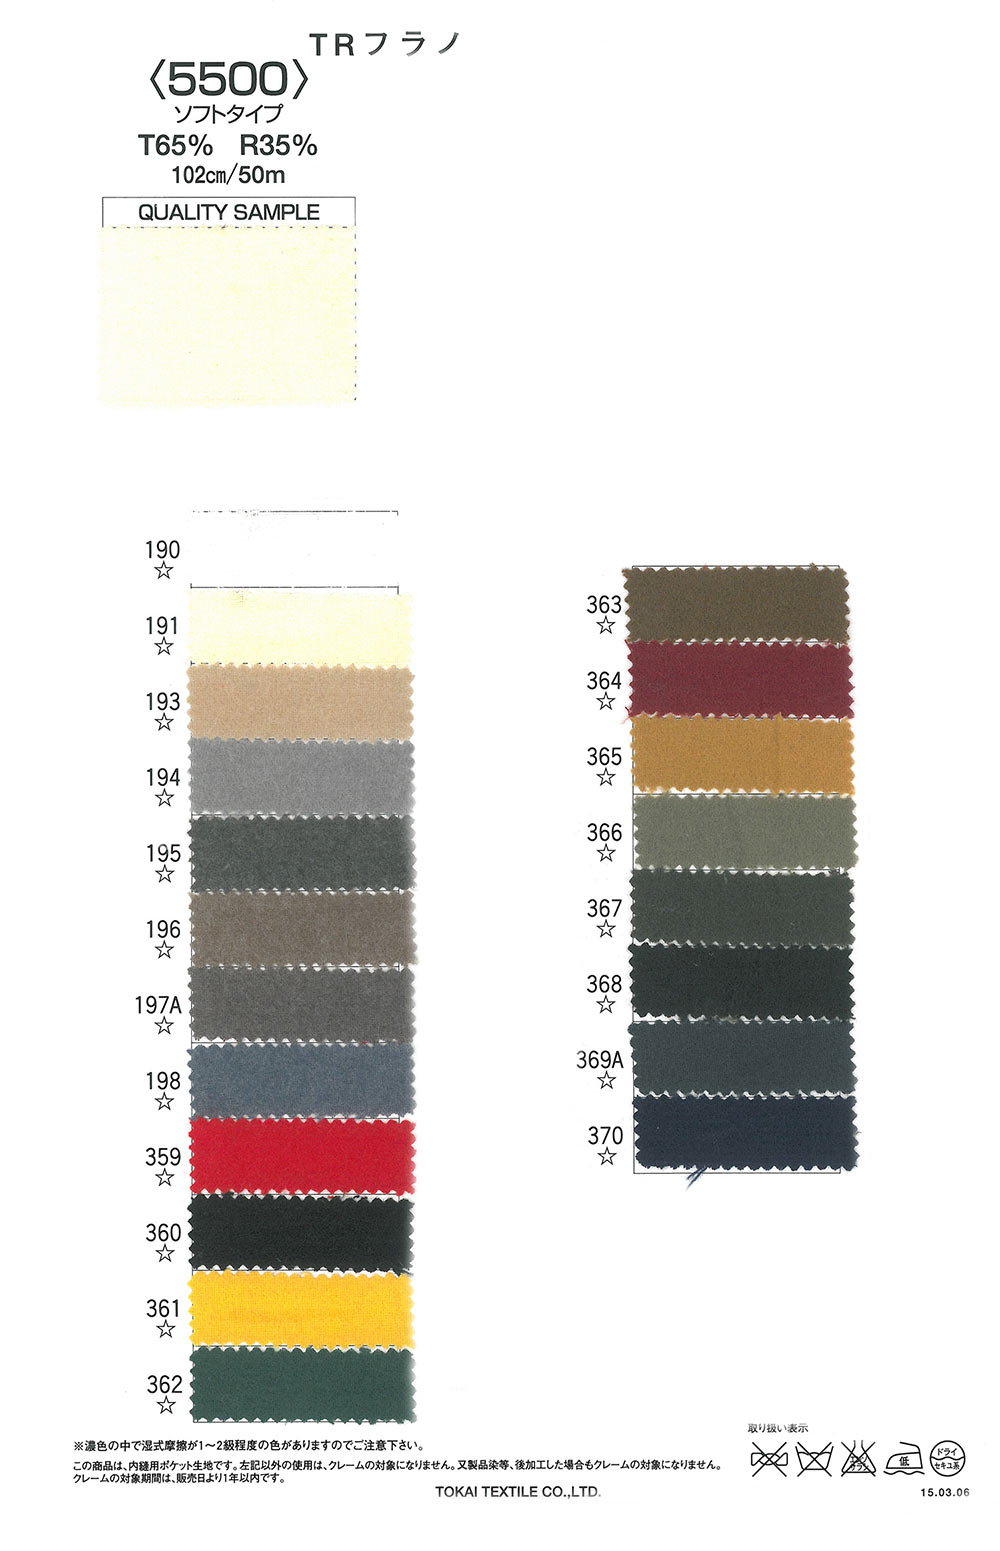 TR5500ソフト TR Vải Dạ Flannel 5500 (Loại Mềm)[Vải Lót Túi] Tokai Textile